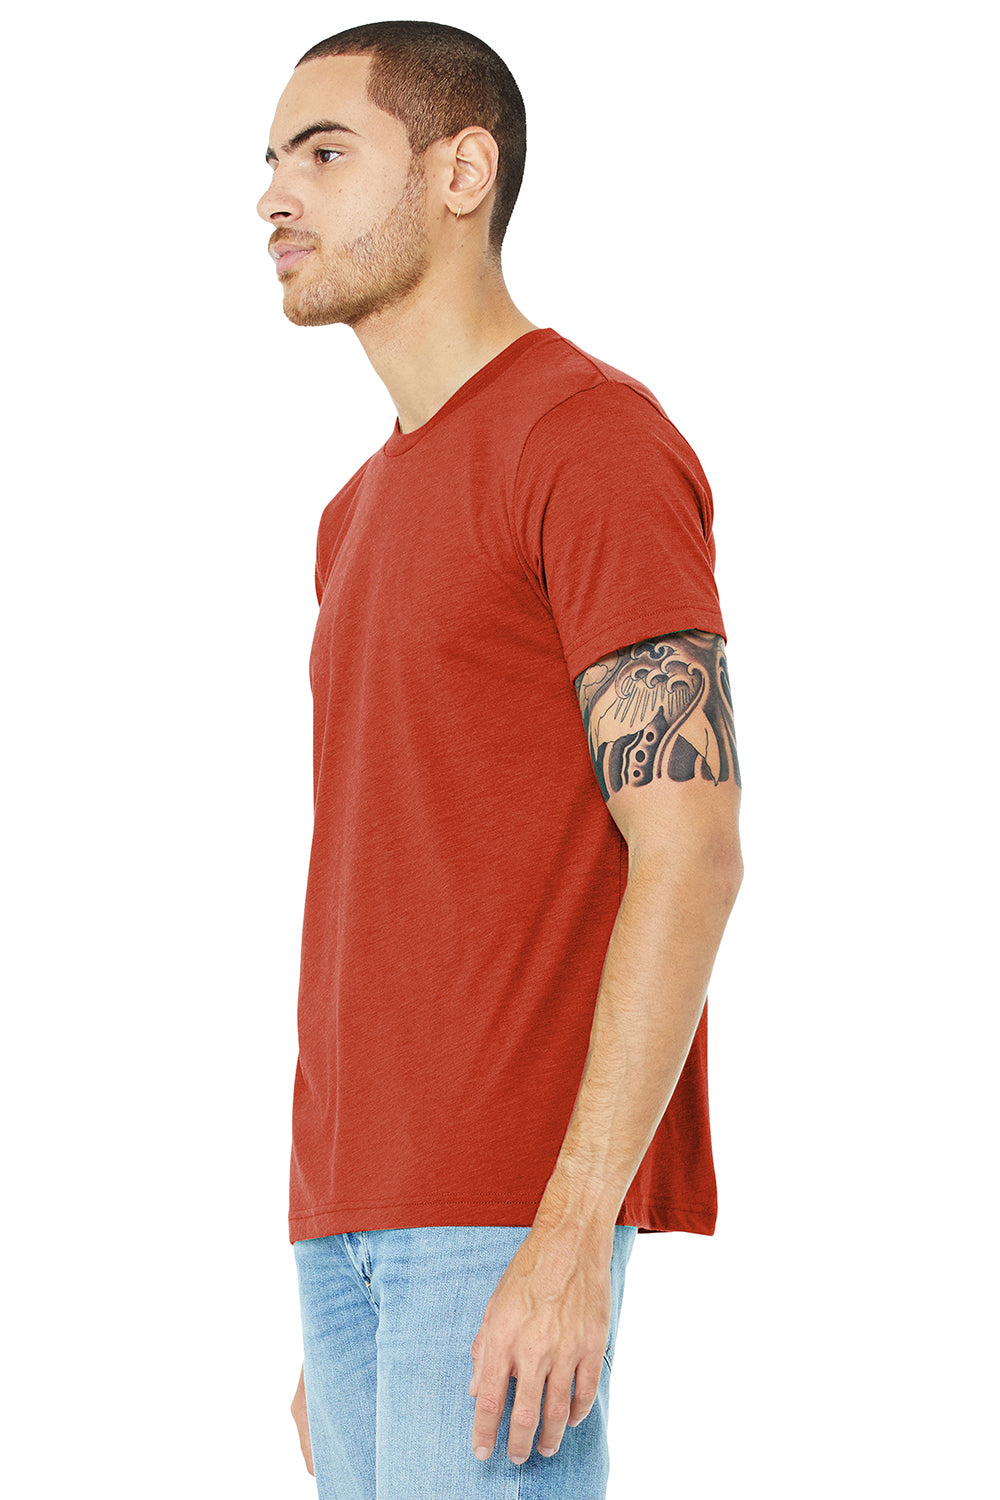 Bella + Canvas BC3413/3413C/3413 Mens Short Sleeve Crewneck T-Shirt Brick Red Model 3Q